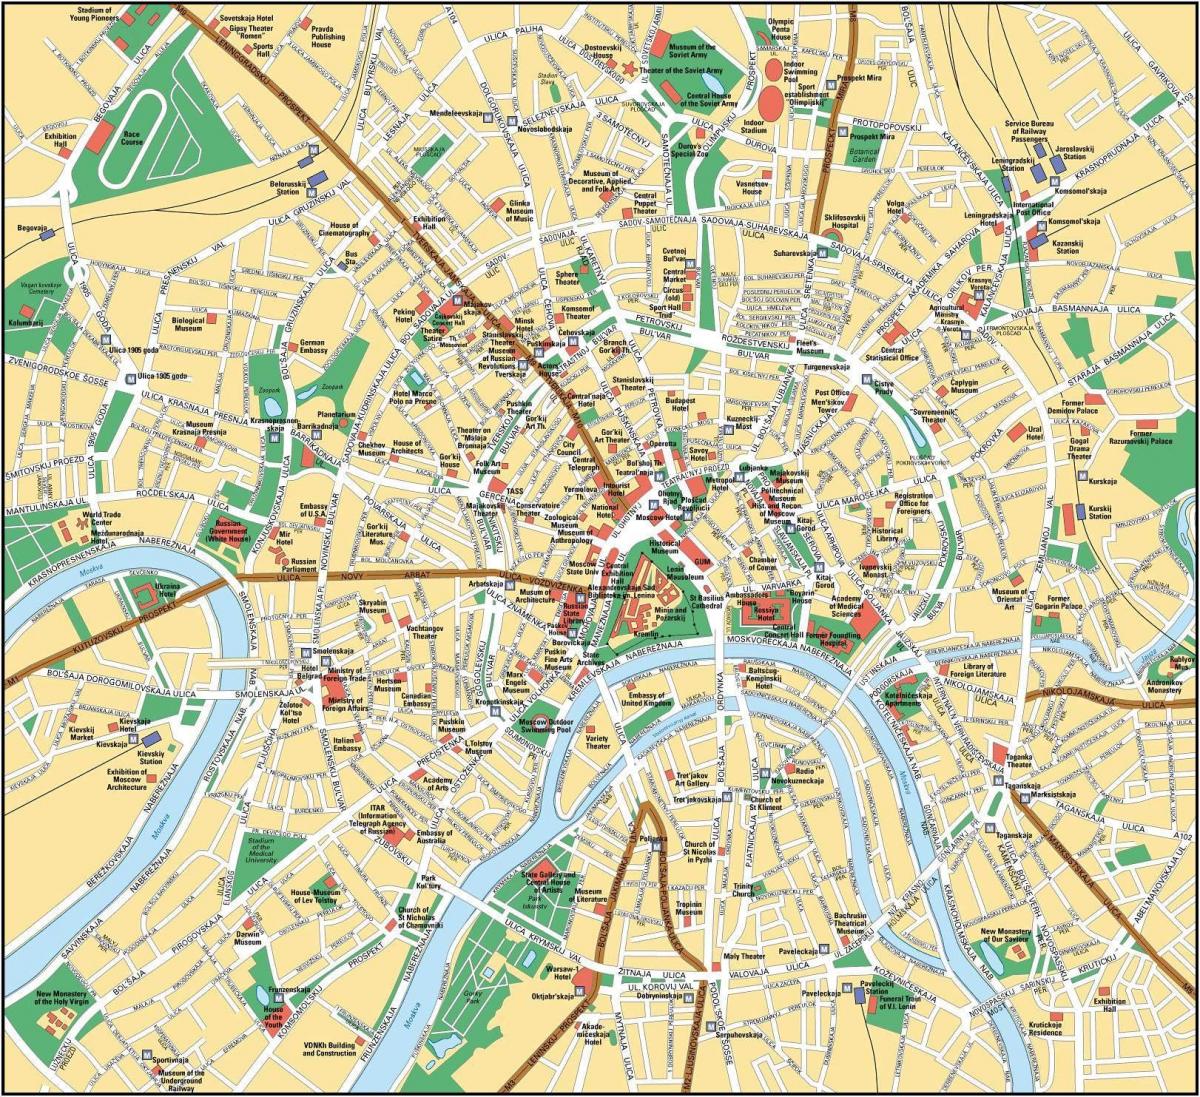 خريطة موسكو في اللغة الإنجليزية